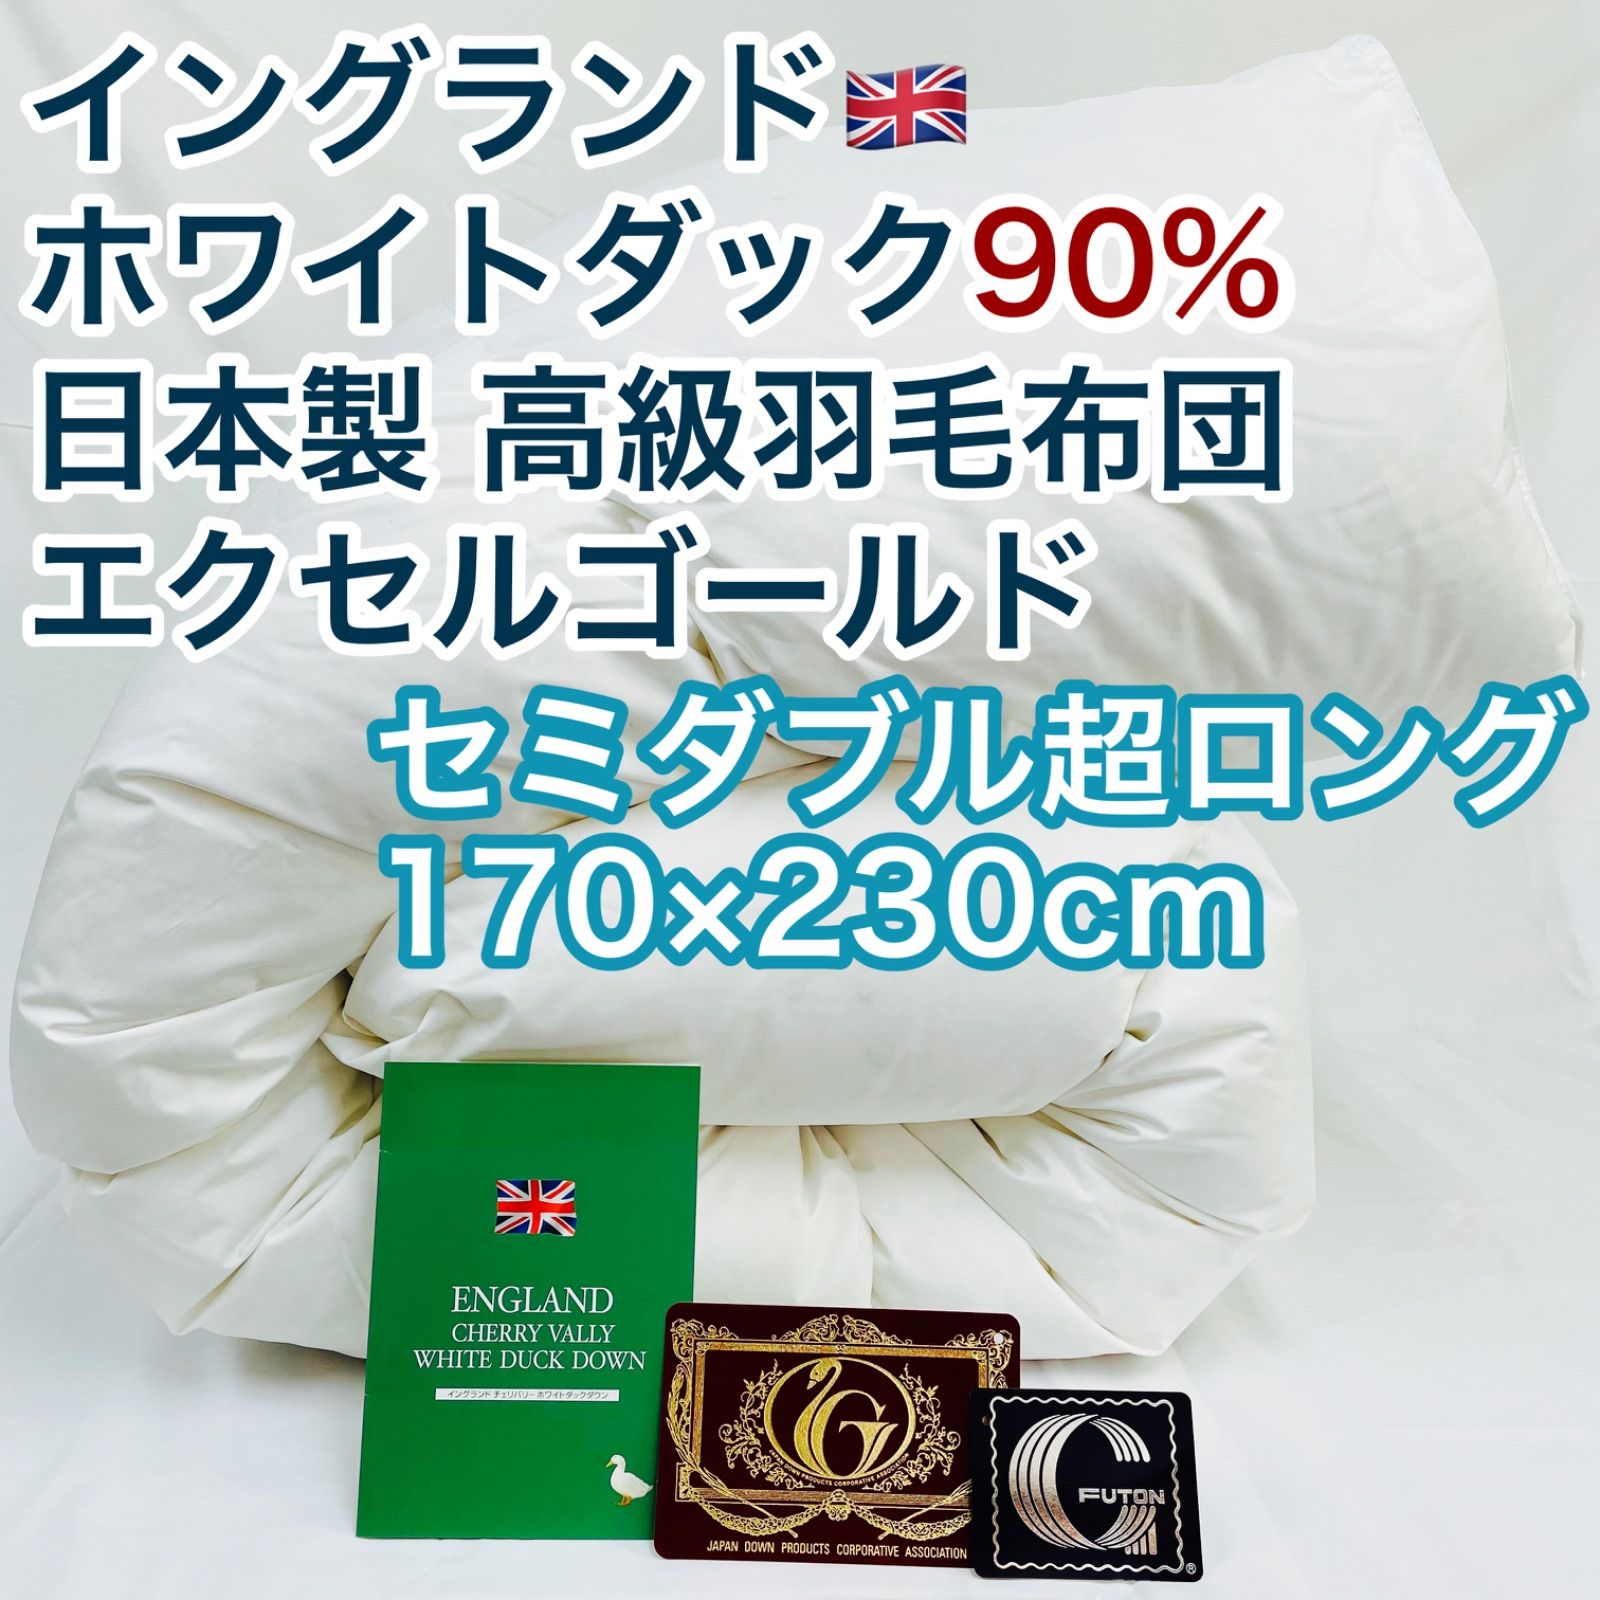 羽毛布団 ダブル超ロング ニューゴールド 白色 日本製 190×230cm ...